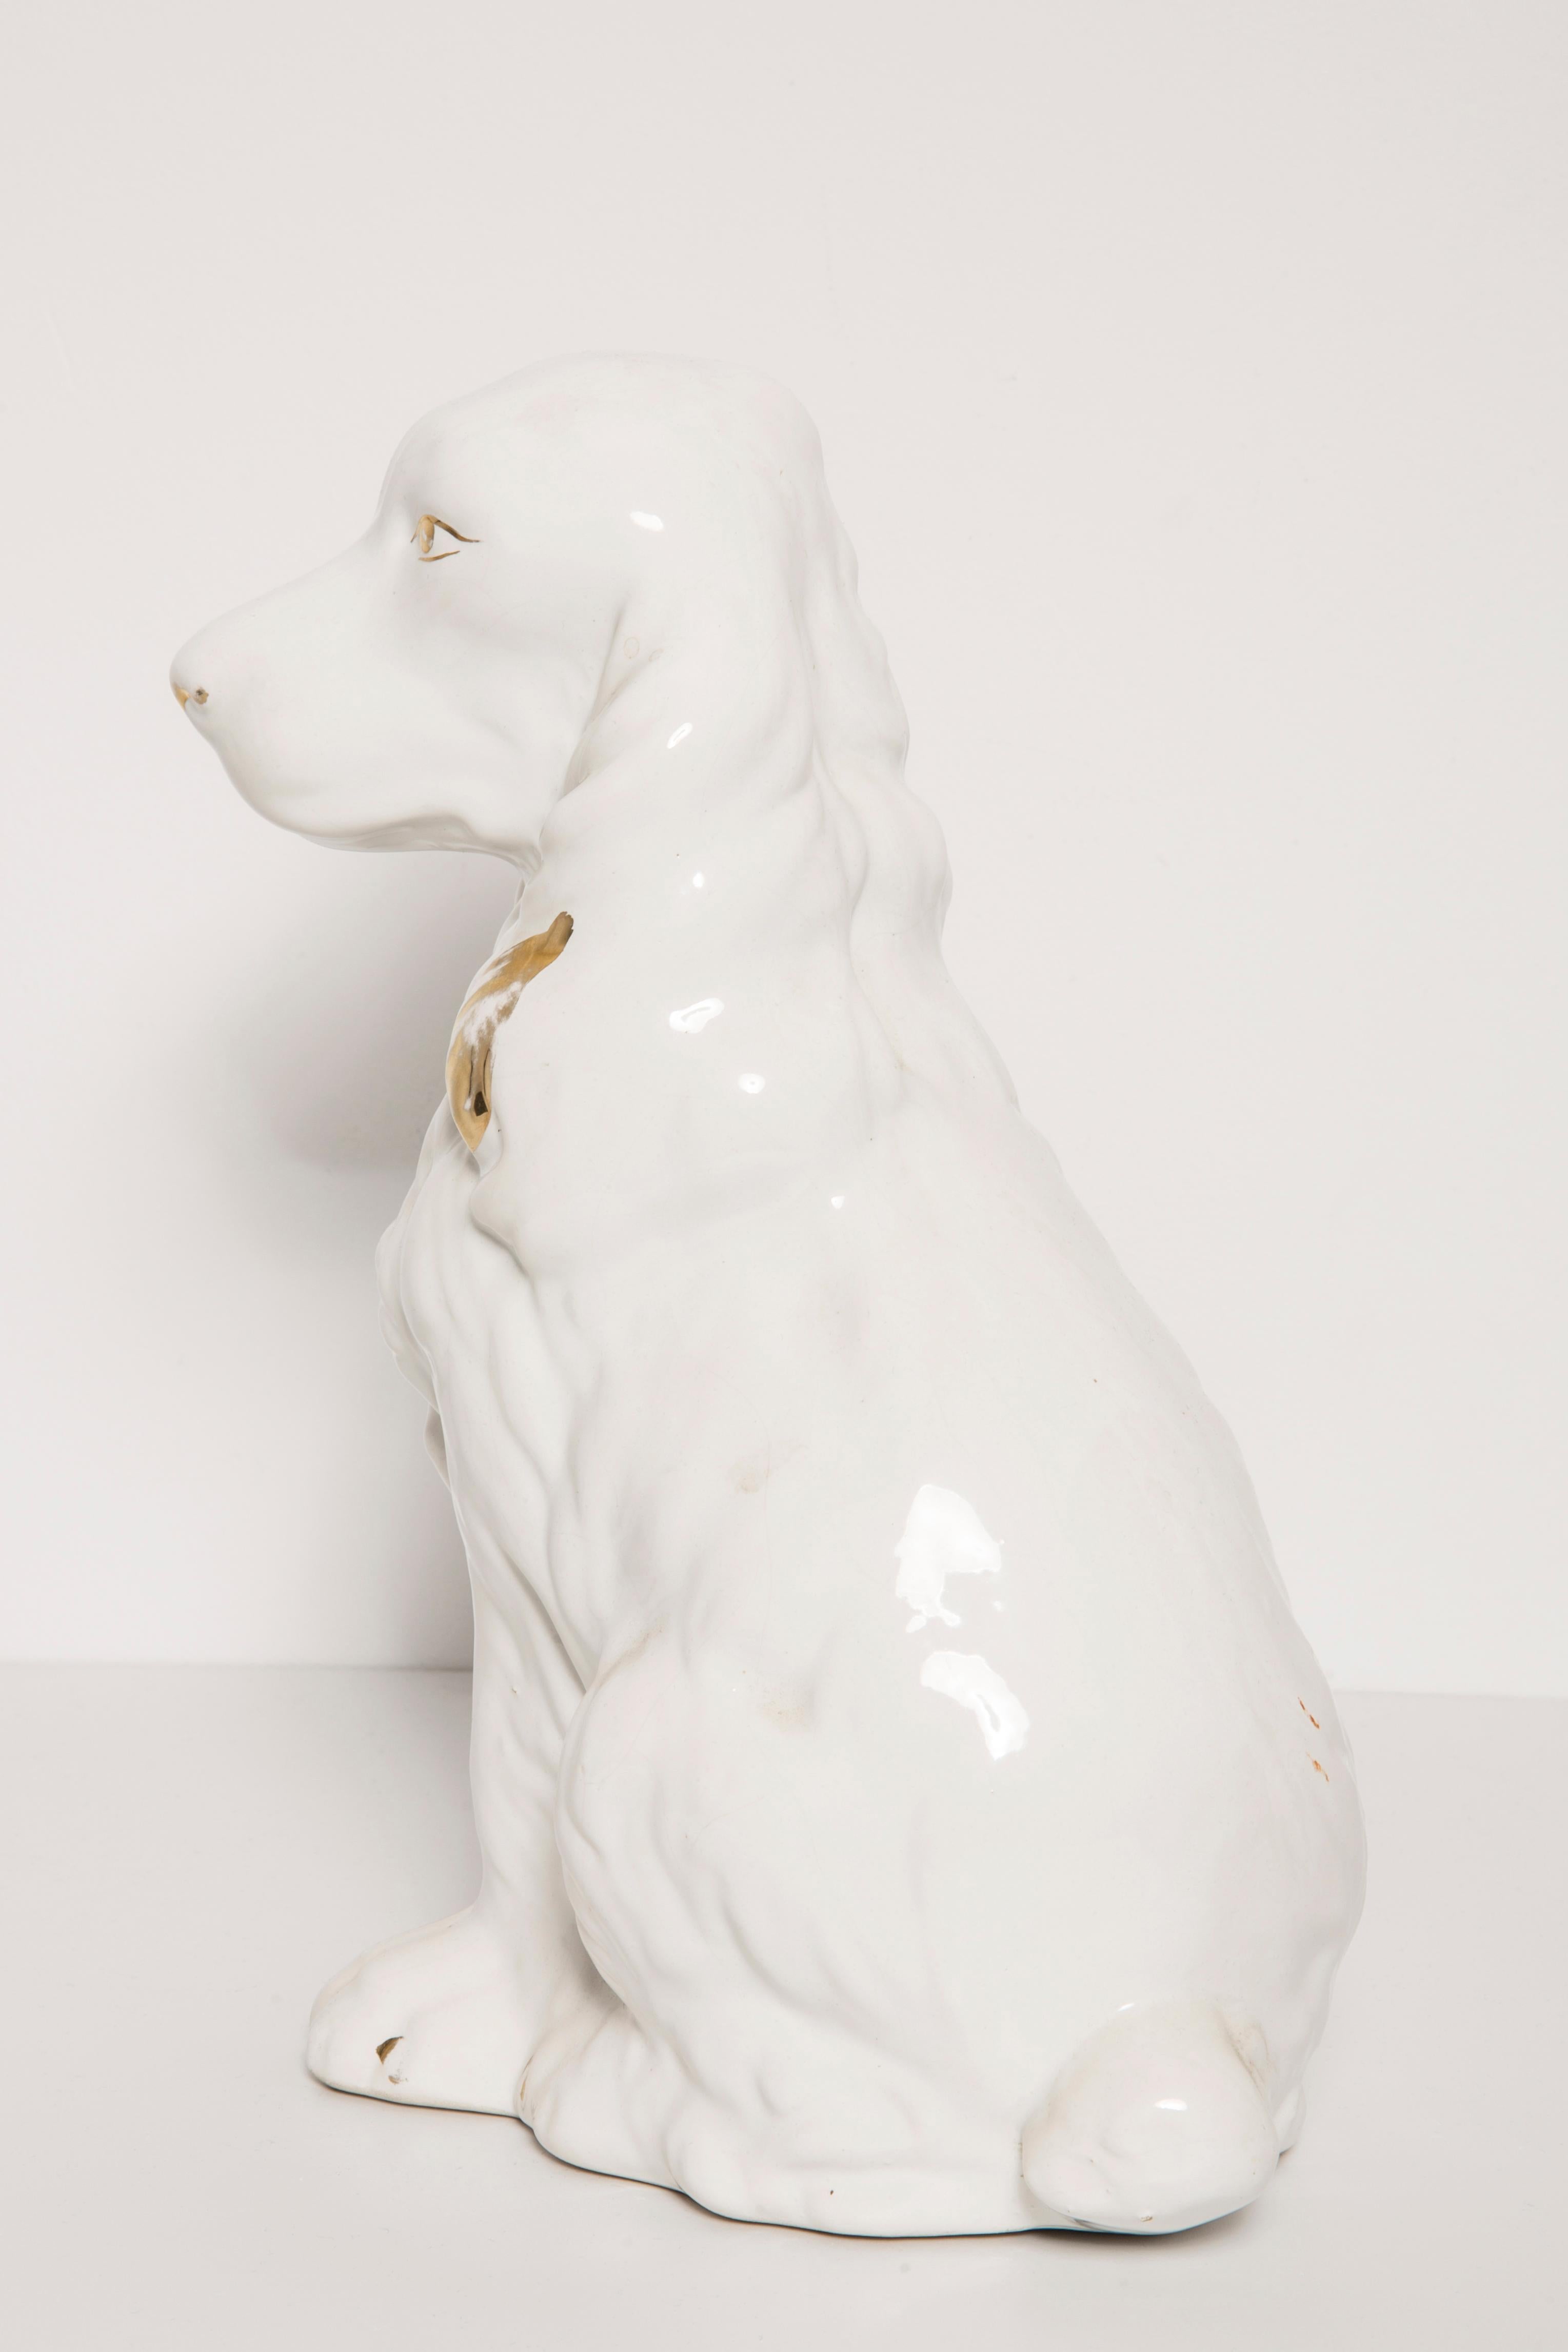 Italian Rare Ceramic White Small Spaniel Dog Decorative Sculpture, Italy, 1960s For Sale